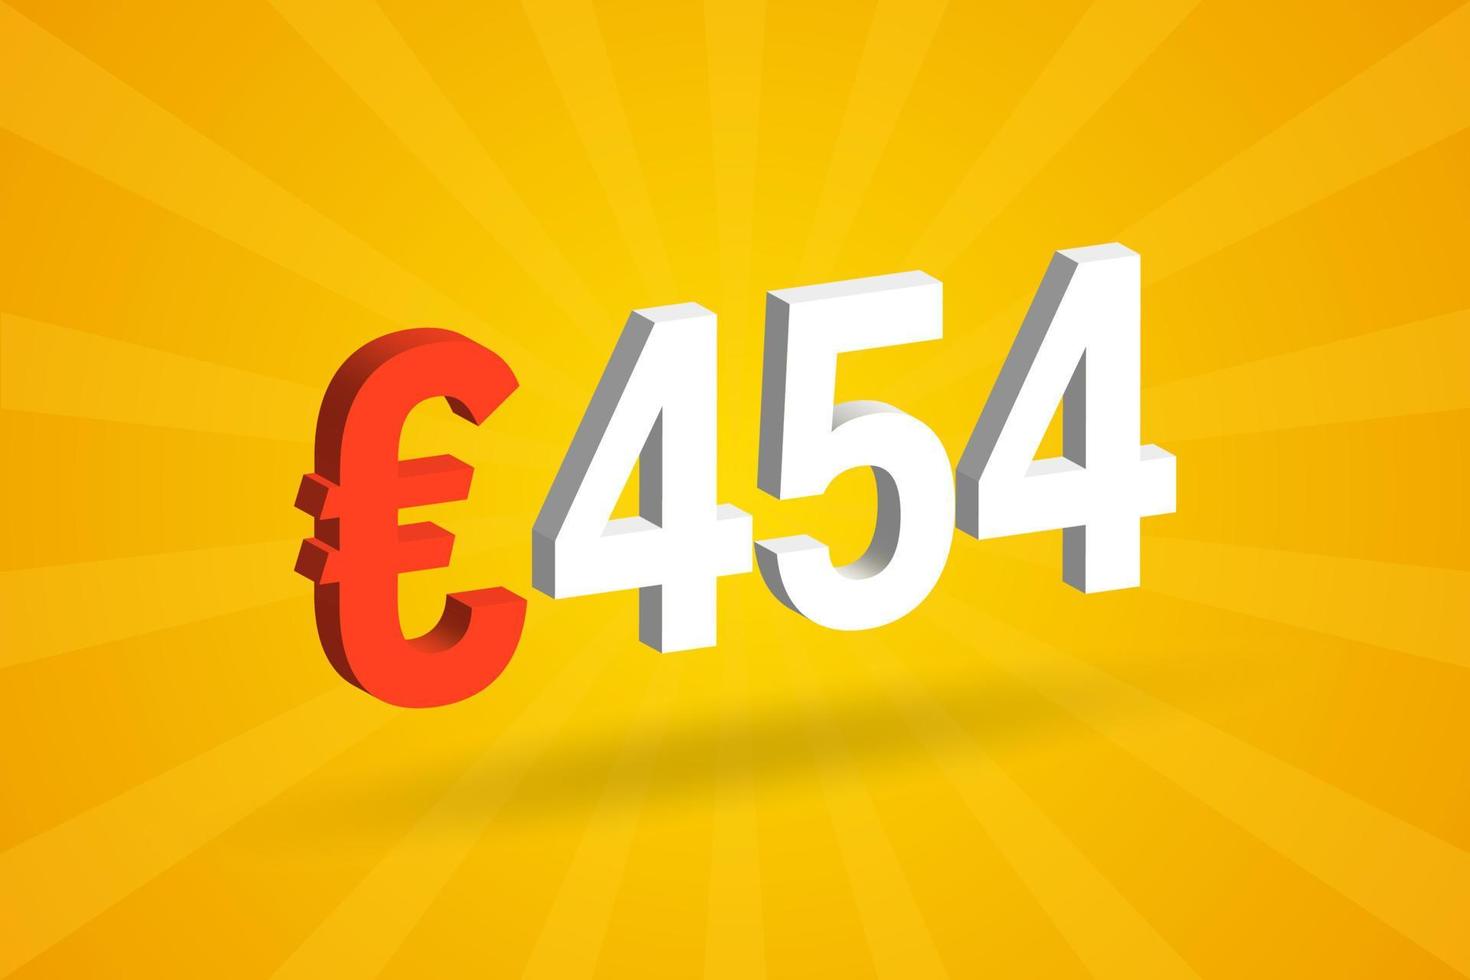 453 euro valuta 3d vektor text symbol. 3d 453 euro europeisk union pengar stock vektor